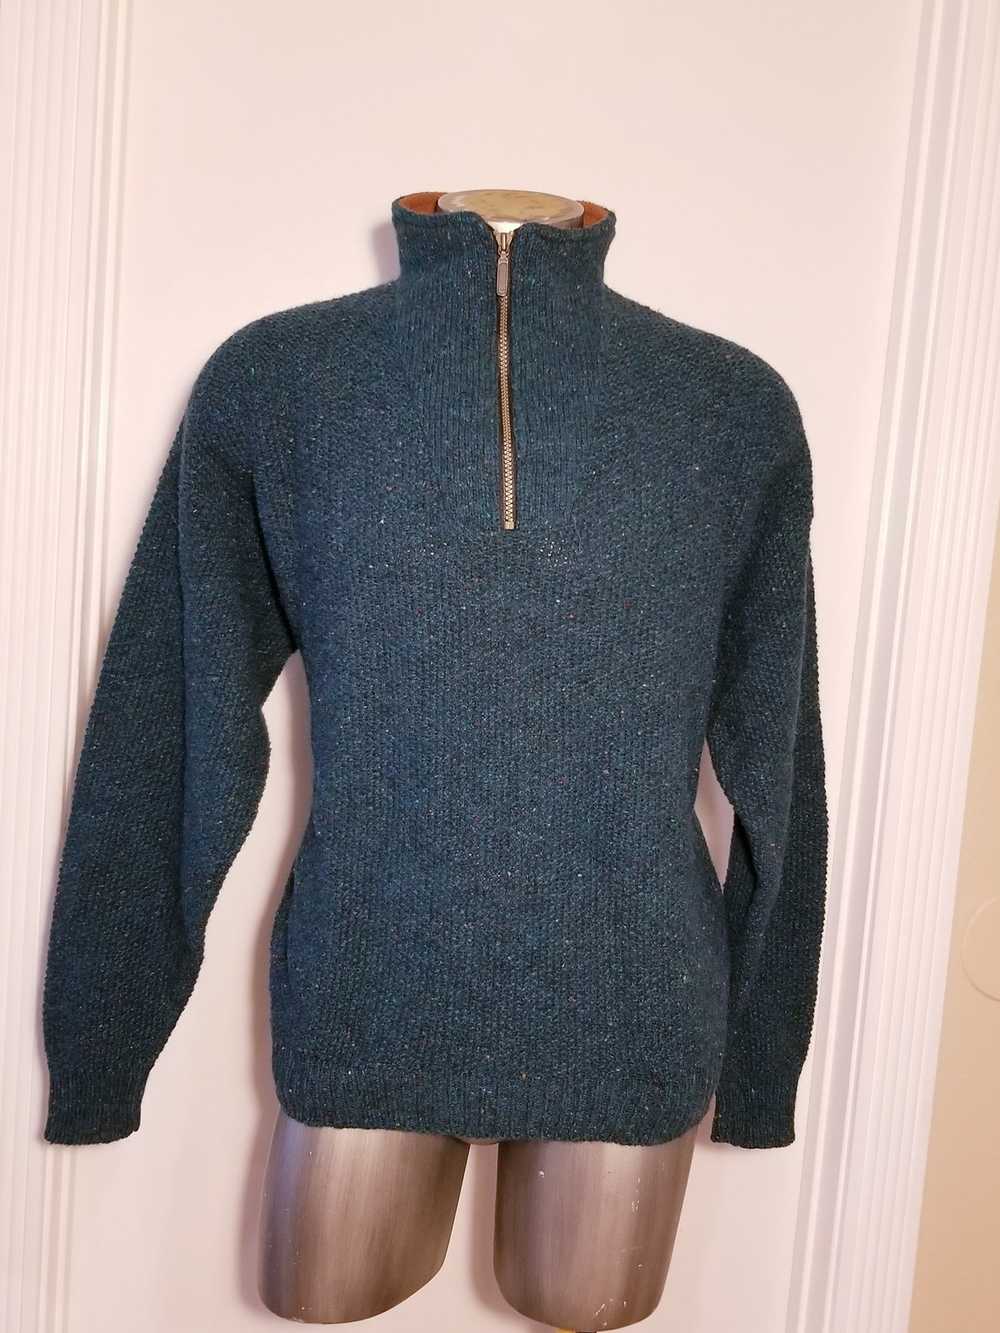 Orvis 1/4 zipper wool vintage - image 10